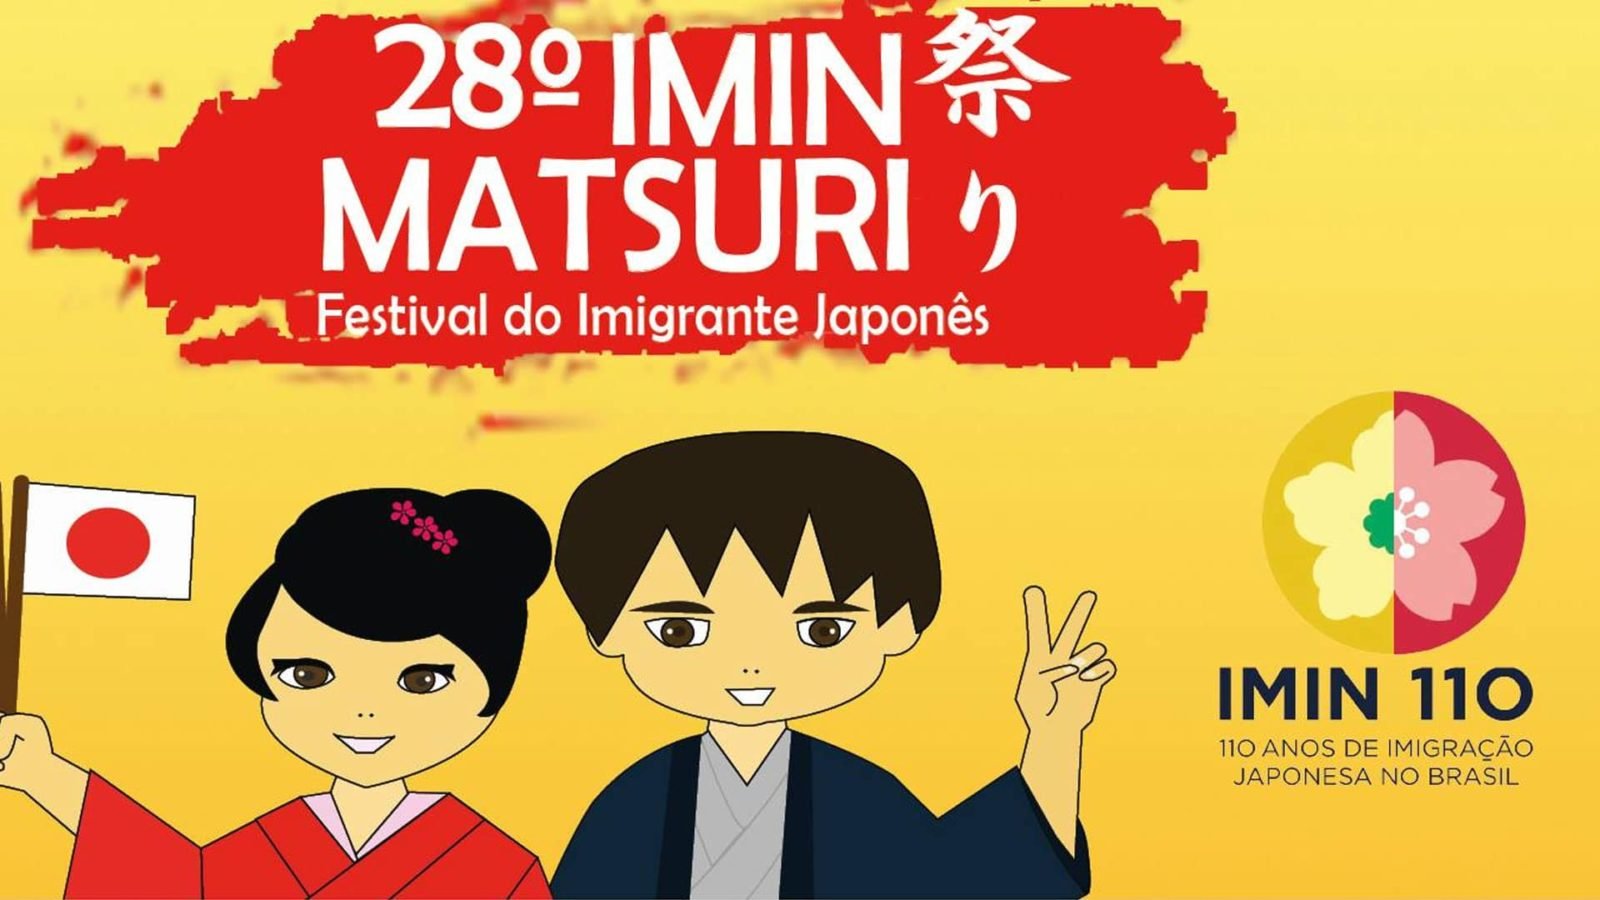 Imin Matsuri 2018 – comemorando 110 anos de imigração japonesa no Brasil